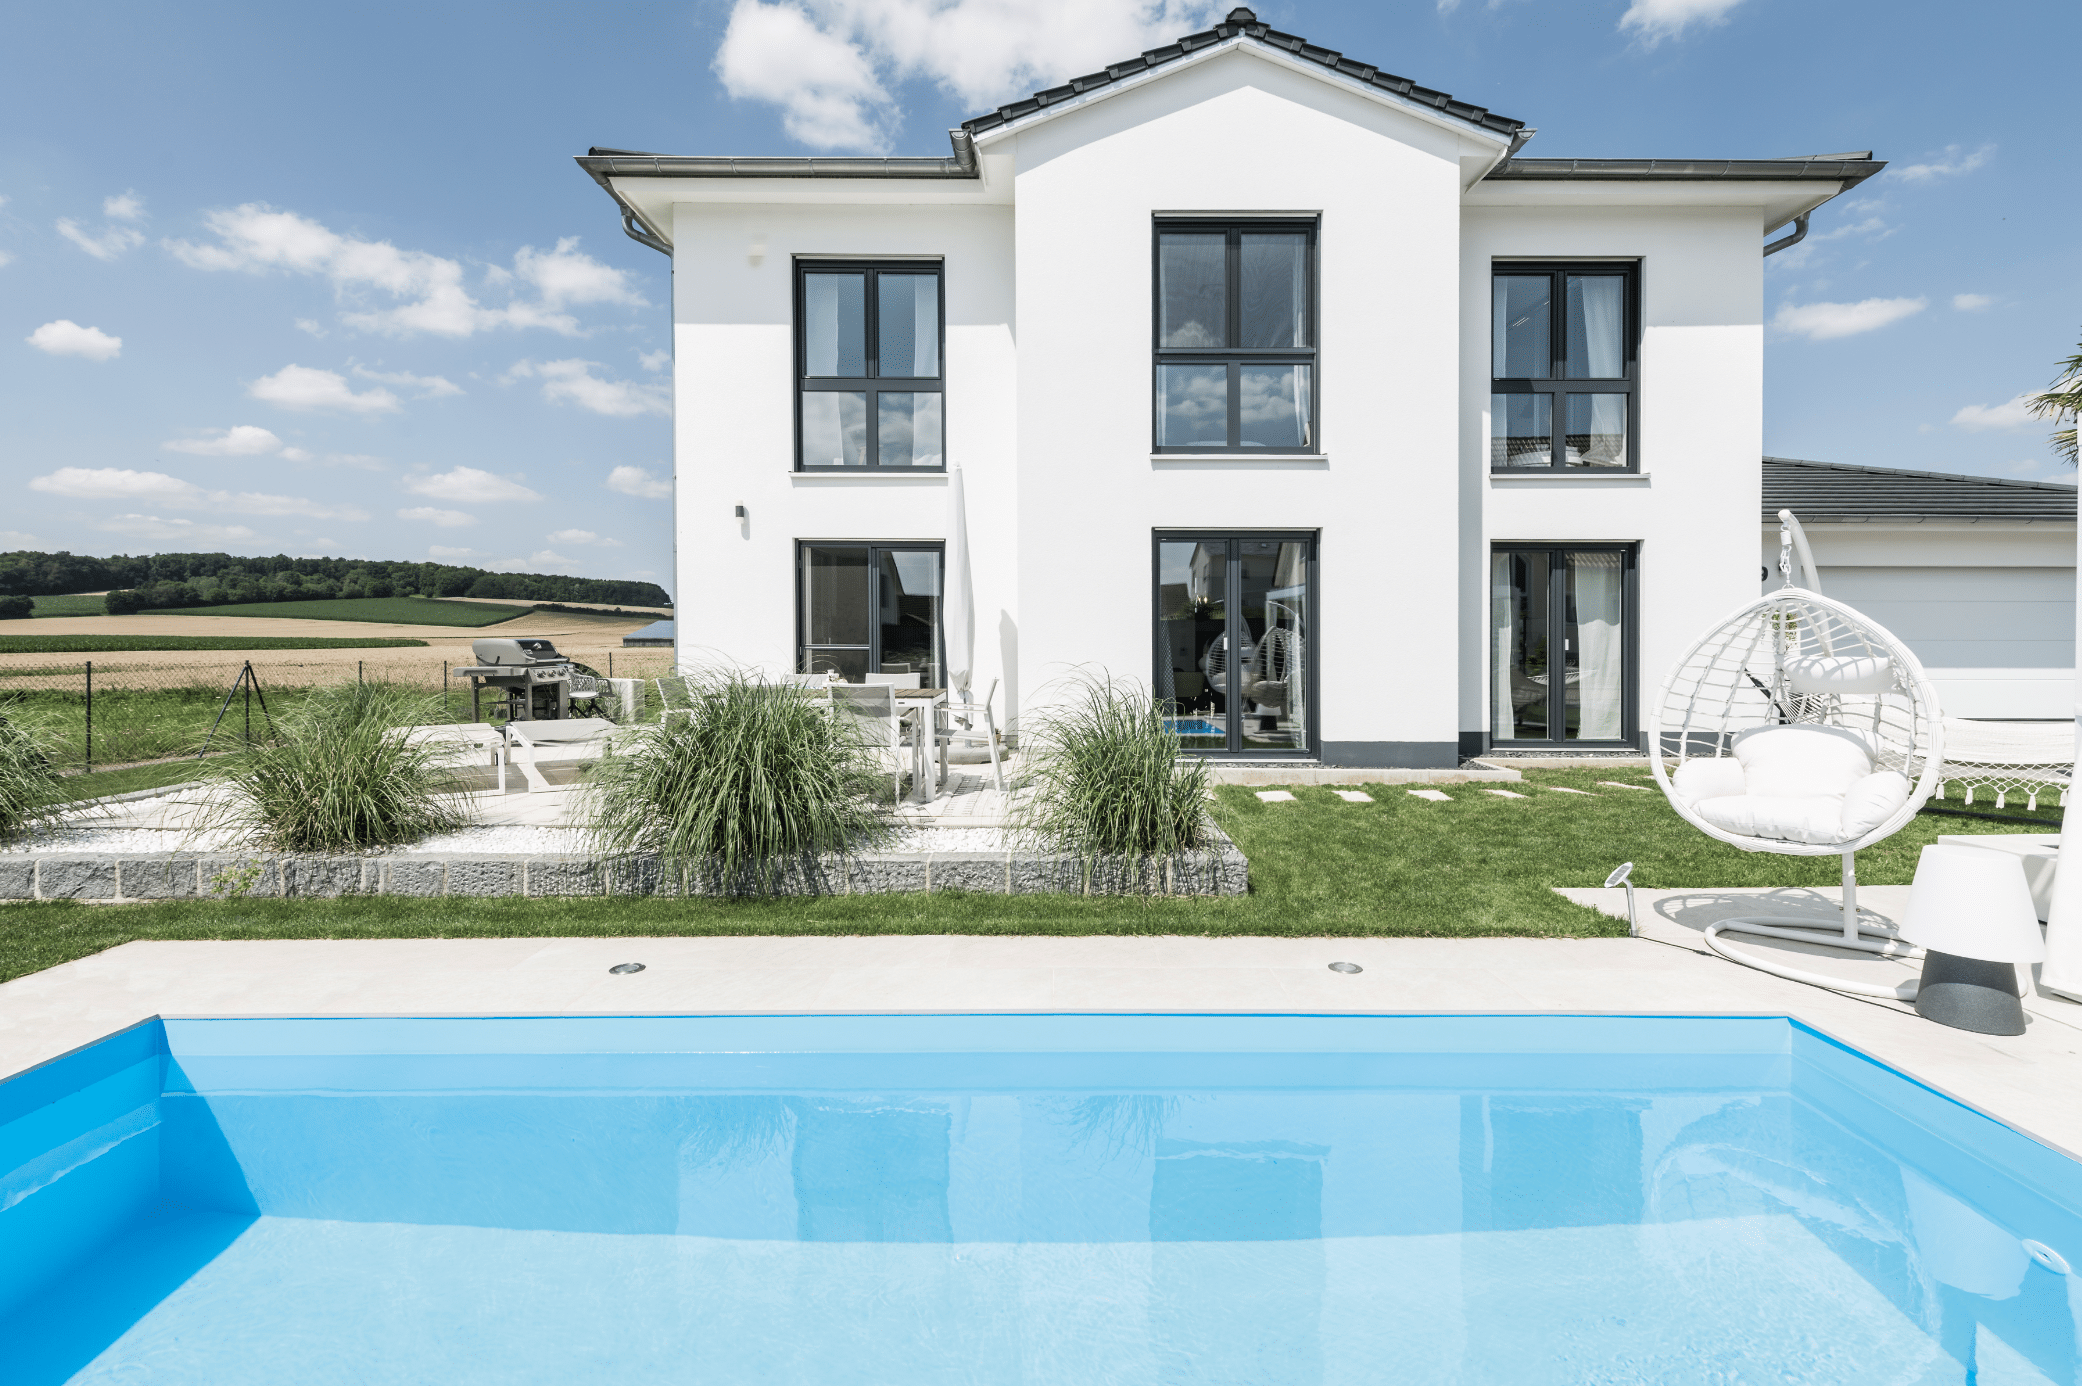 Internorm zeigt ein weisses Einfamilienhaus, große Fenster mit schwarzen Rahmen und eine begrünte Terrasse und eckigem Pool mit weissem Hängesessel.